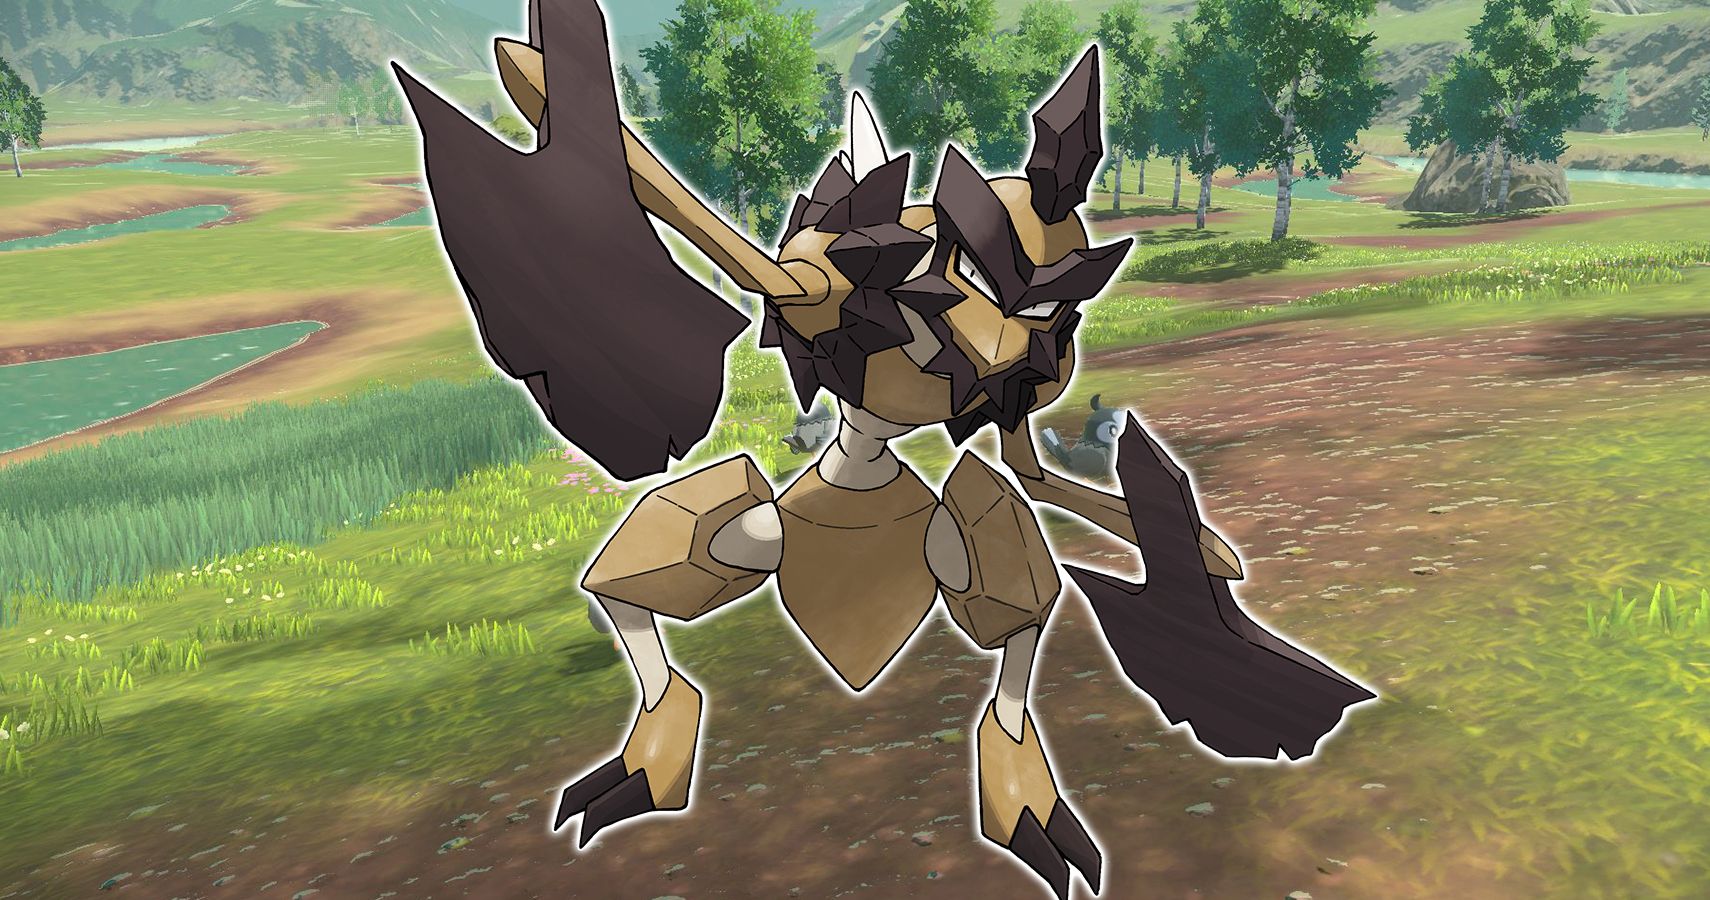 Kleavor is de nieuwe regionale-evolutie die in de Pokémon-games komt